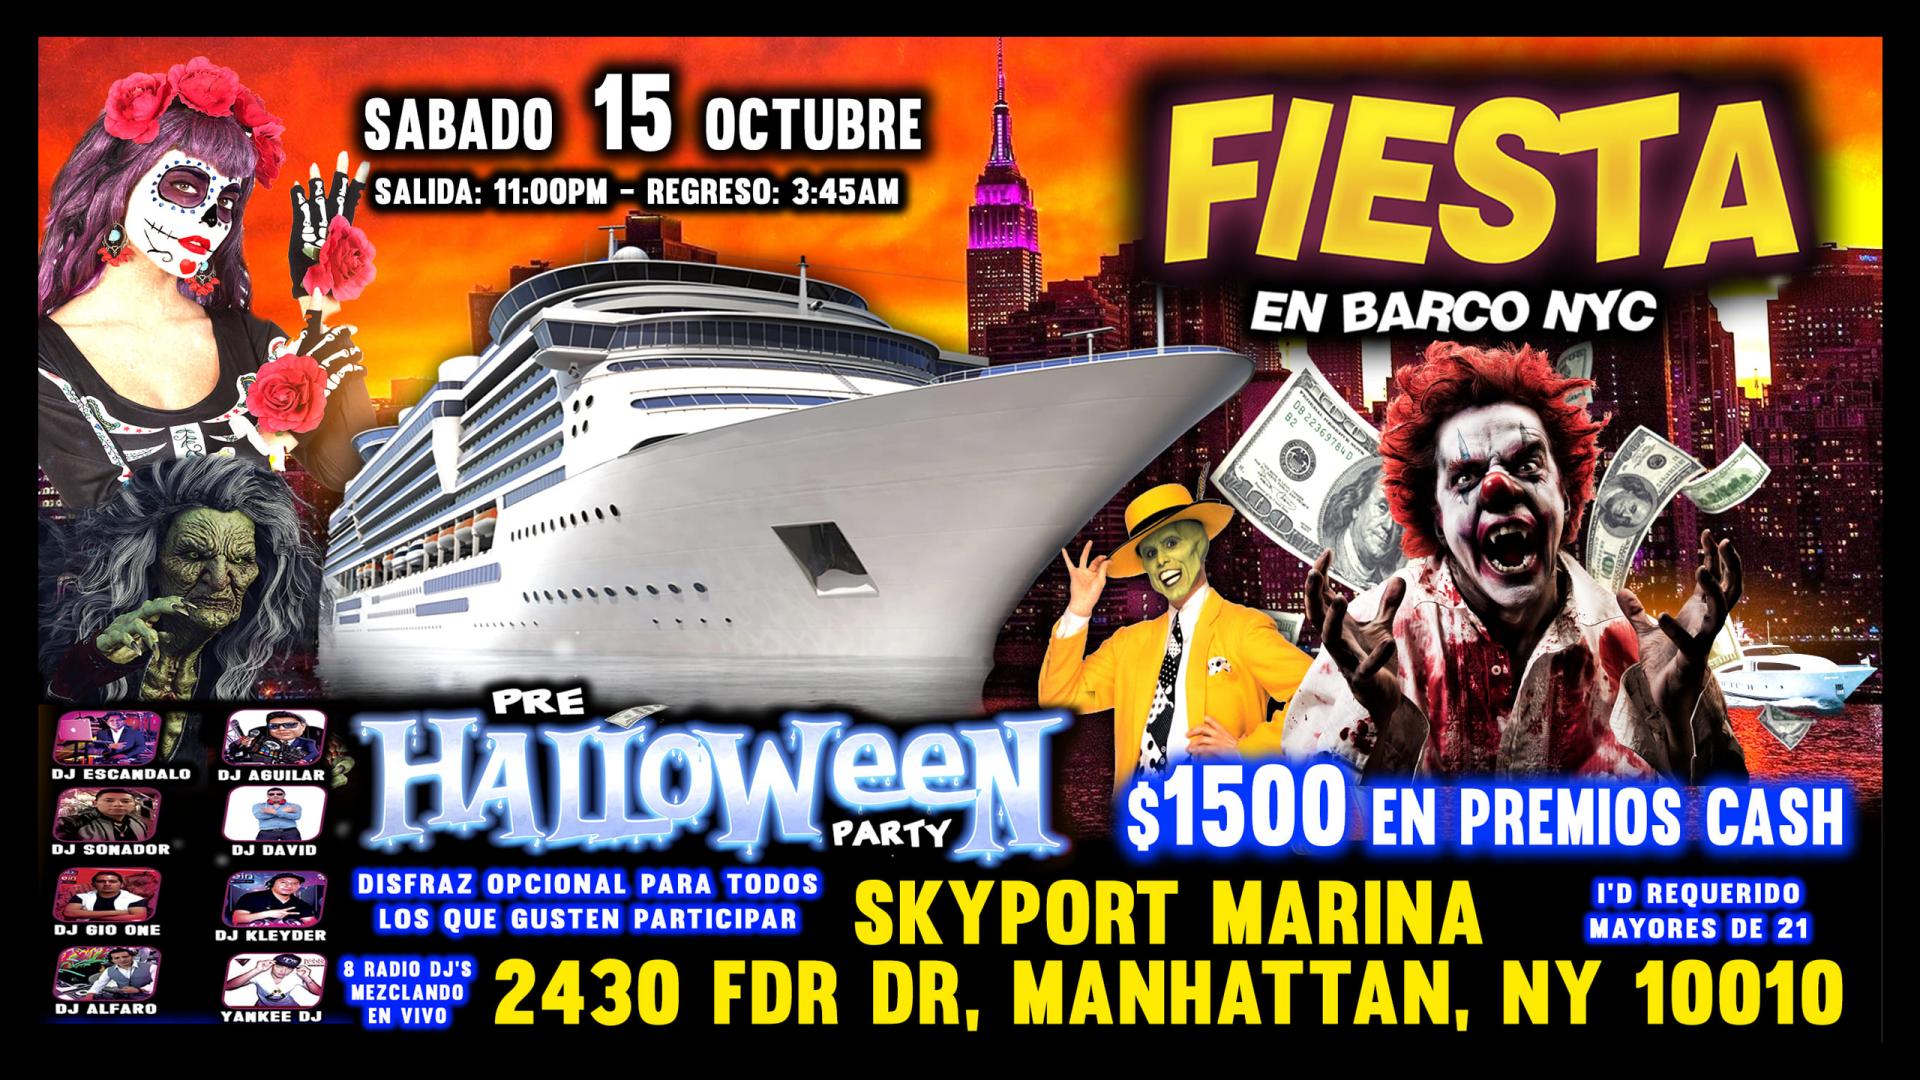 Pre Halloween Party - Fiesta En Barco - $1500 En Premios